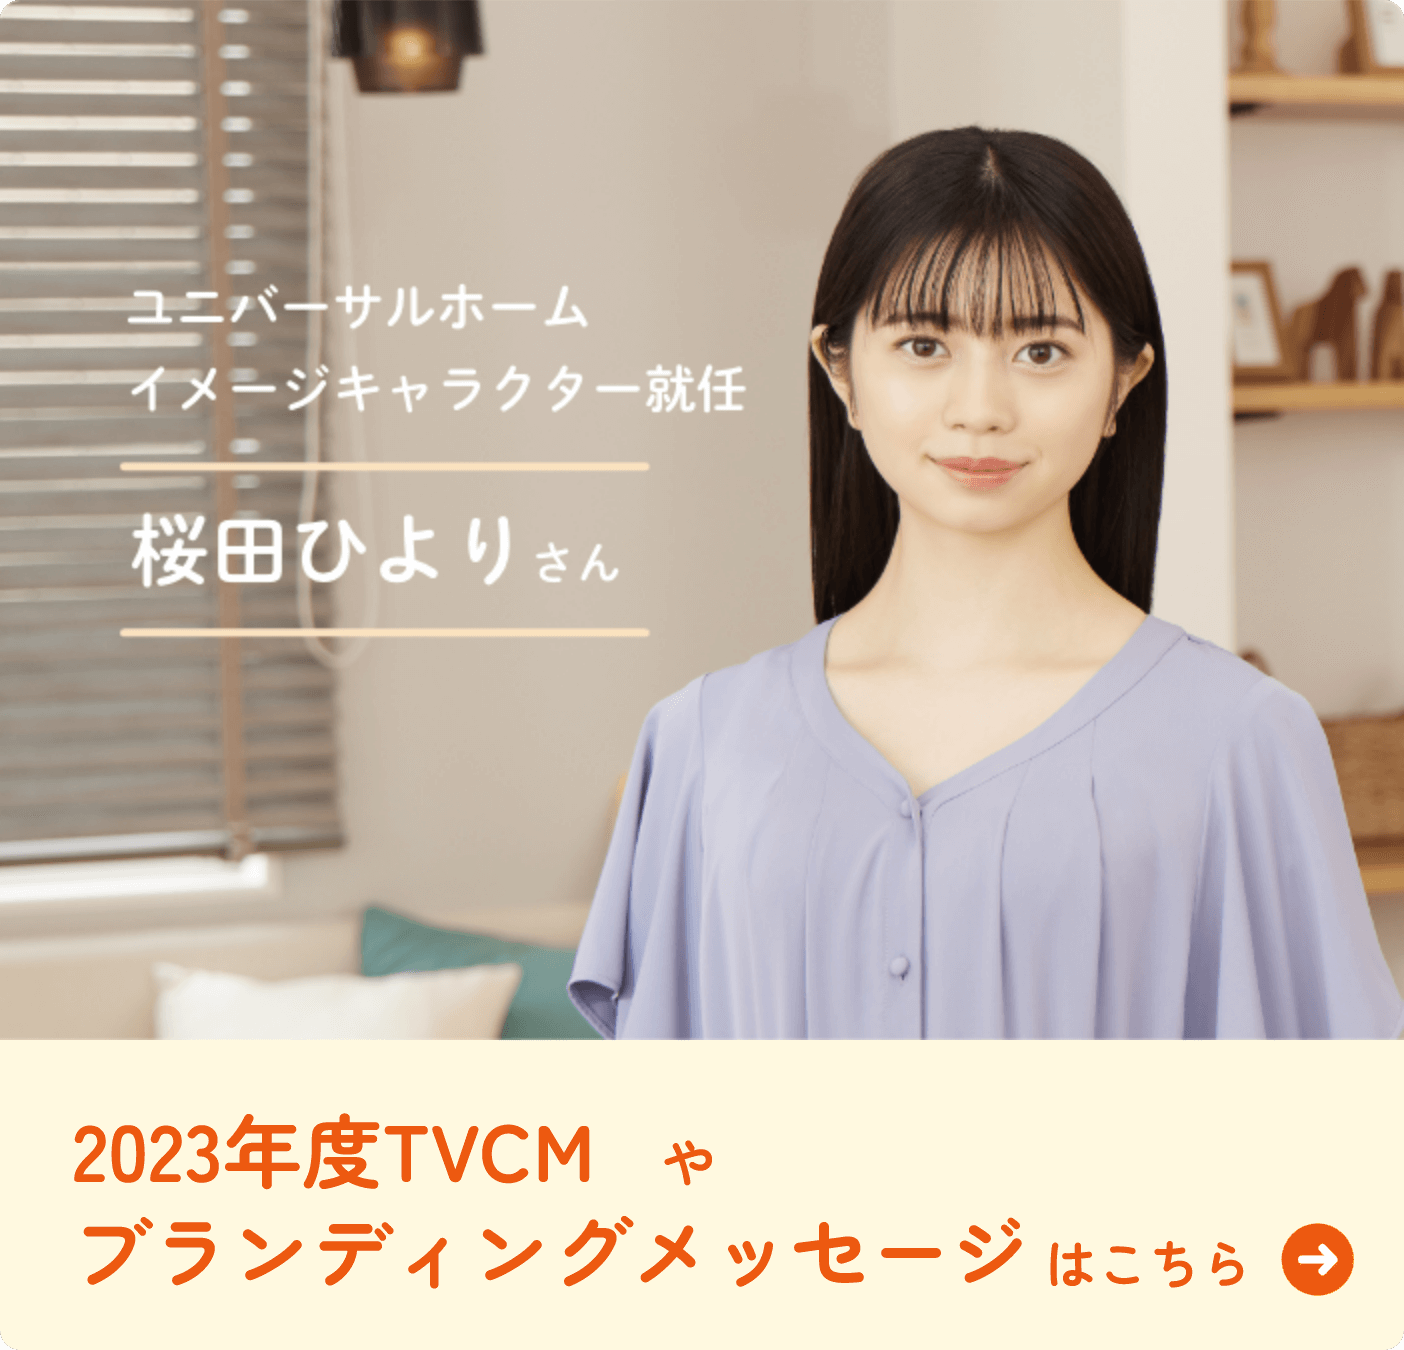 ユニバーサルホームイメージキャラクター就任 桜田ひよりさん 2023年度TVCMやブランディングメッセージはこちら